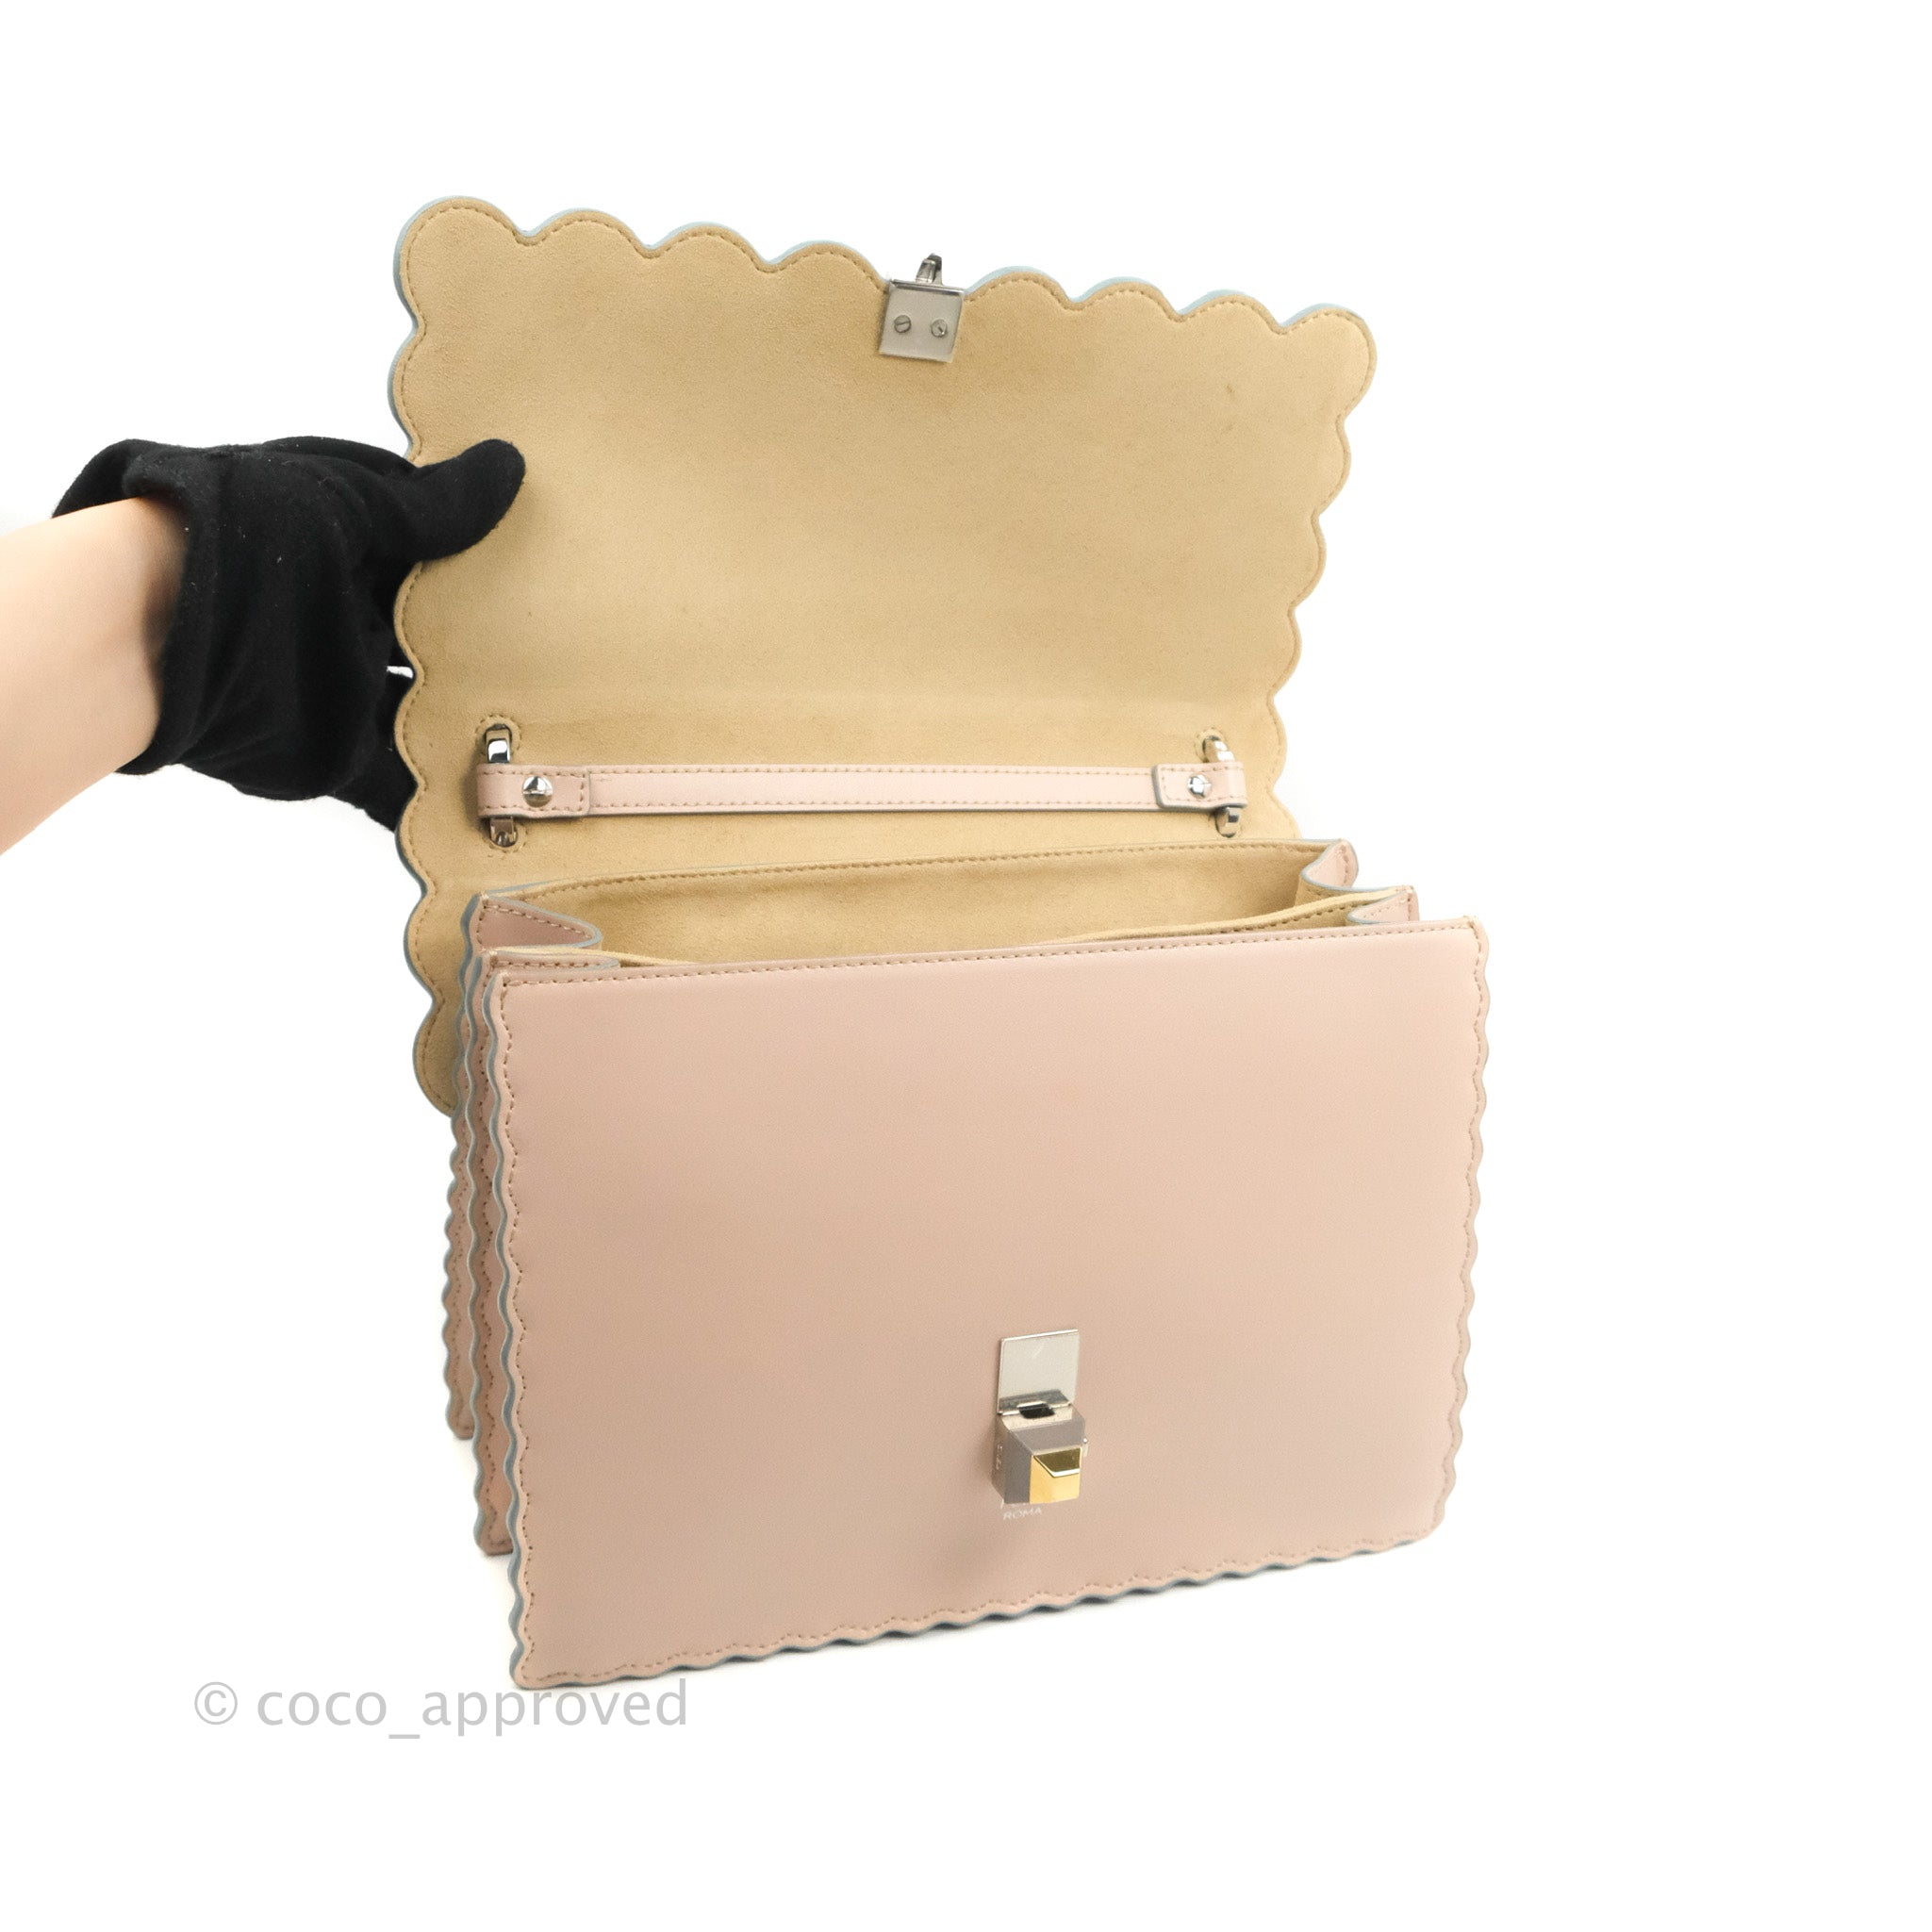 Fendi Kan I Scalloped Shoulder Bag Pale Pink Silver Hardware